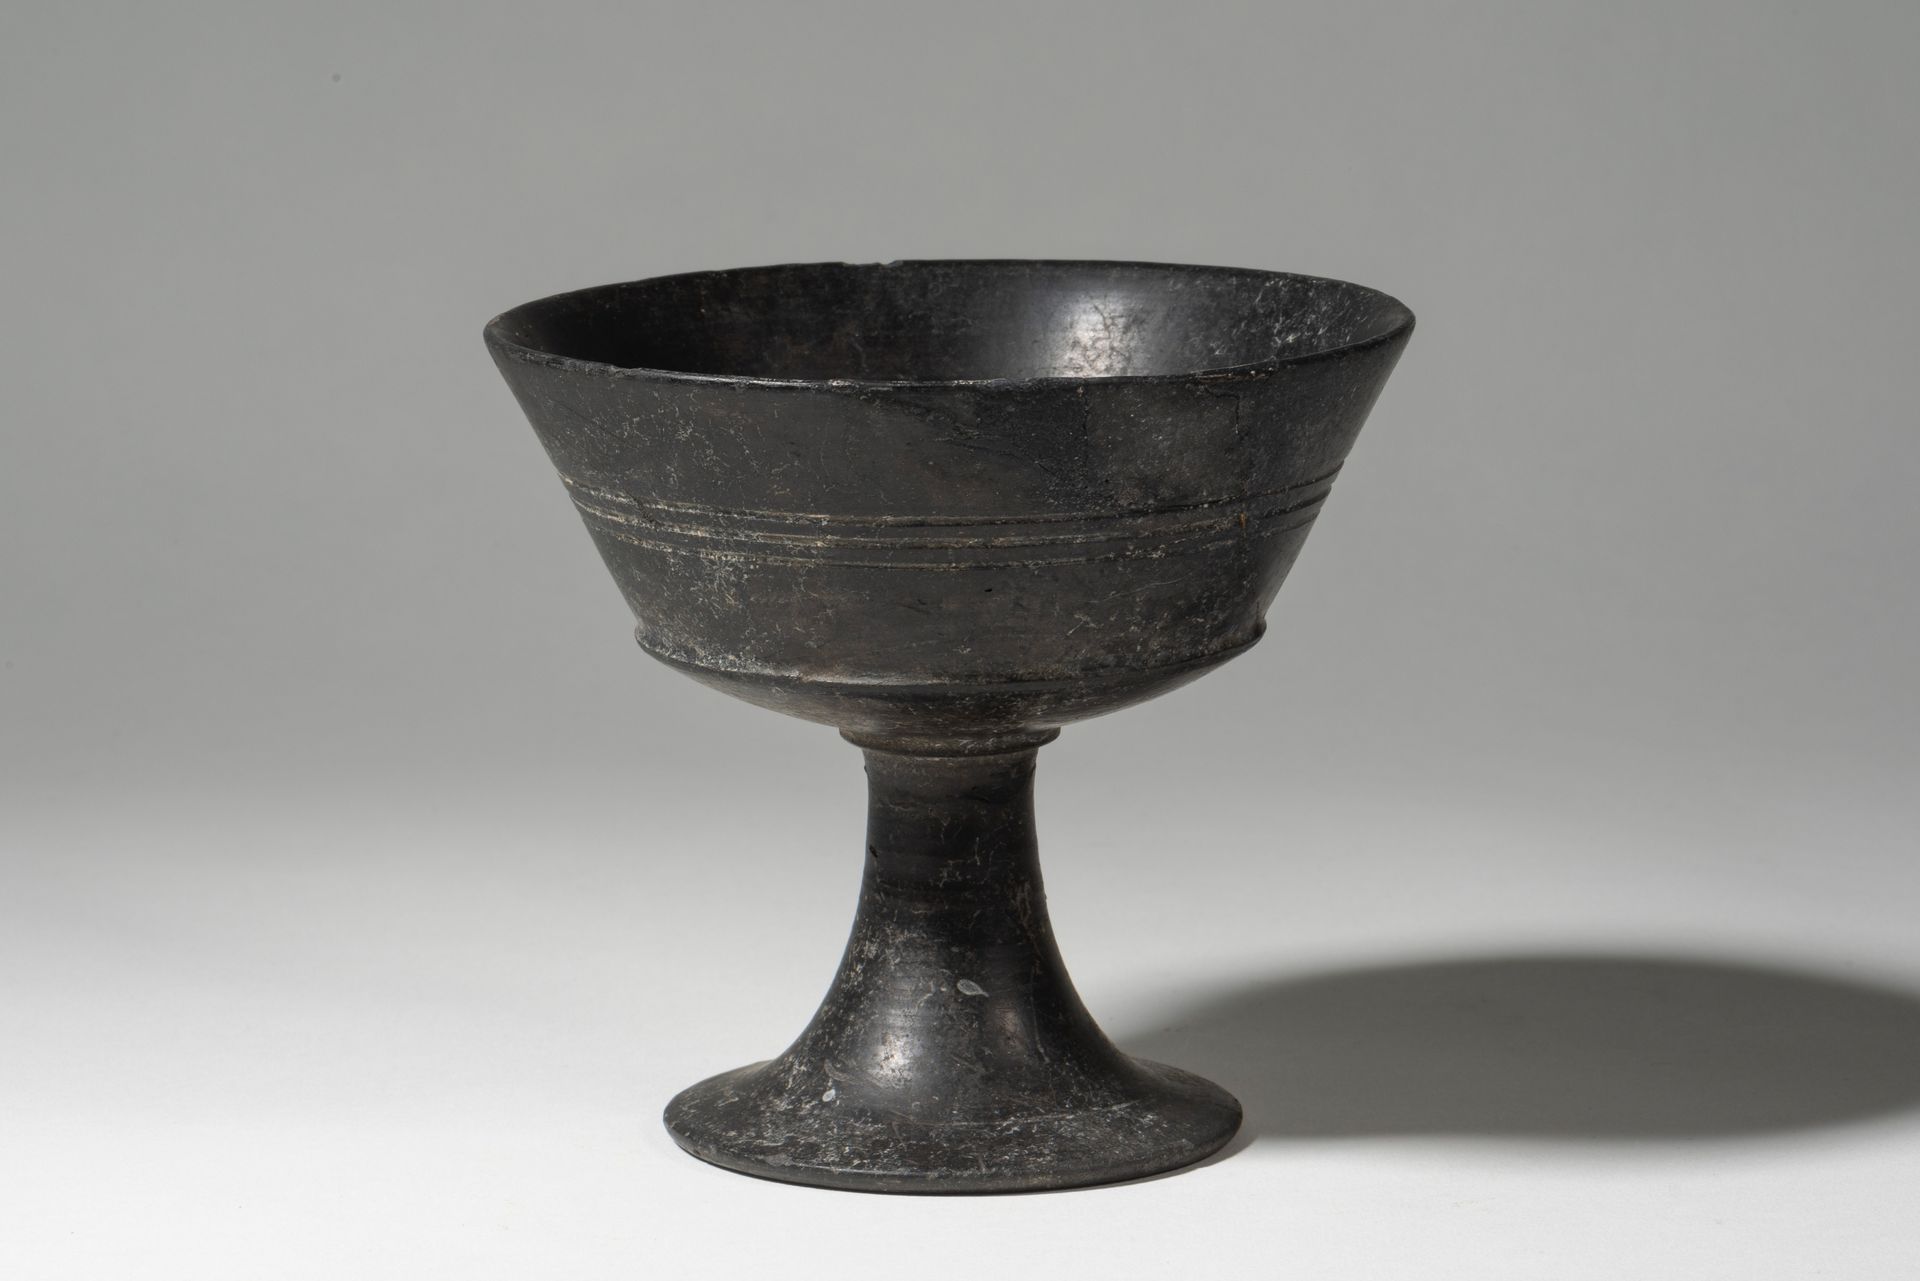 Coupe sur haut piédouche tronconique évasé 
公元前6世纪的伊特鲁里亚人




杯子放在一个高高的、外翻的、截顶的圆&hellip;